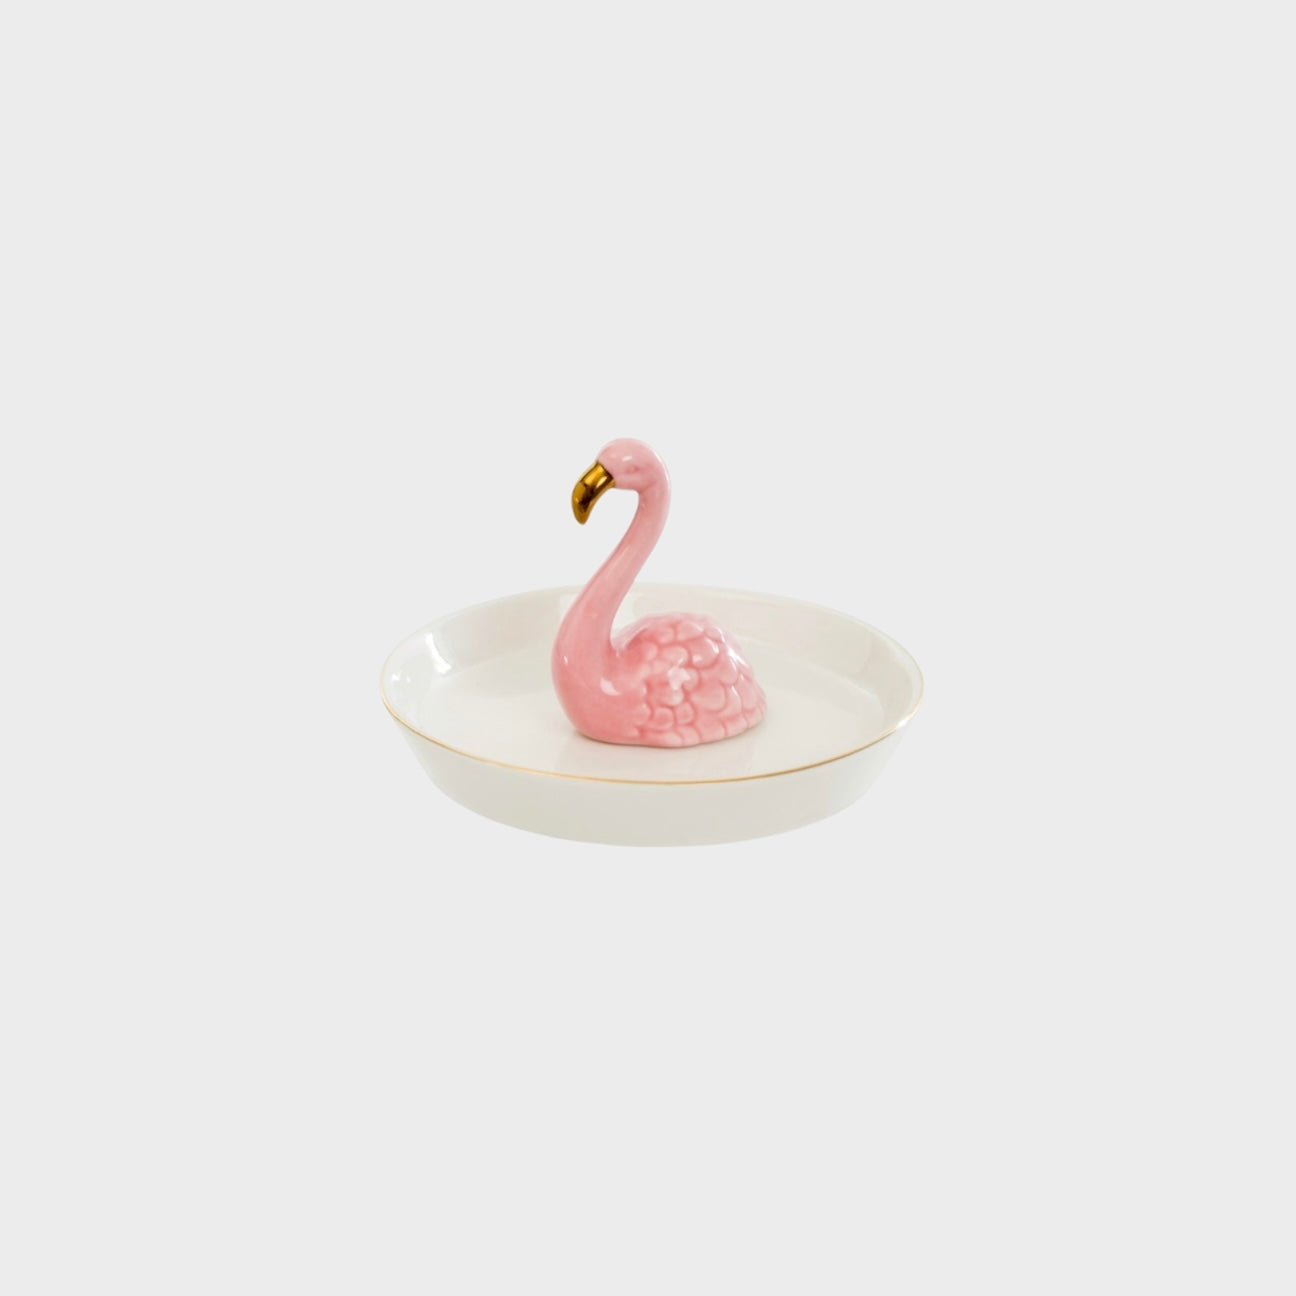 Flamingo Jewelry Plate